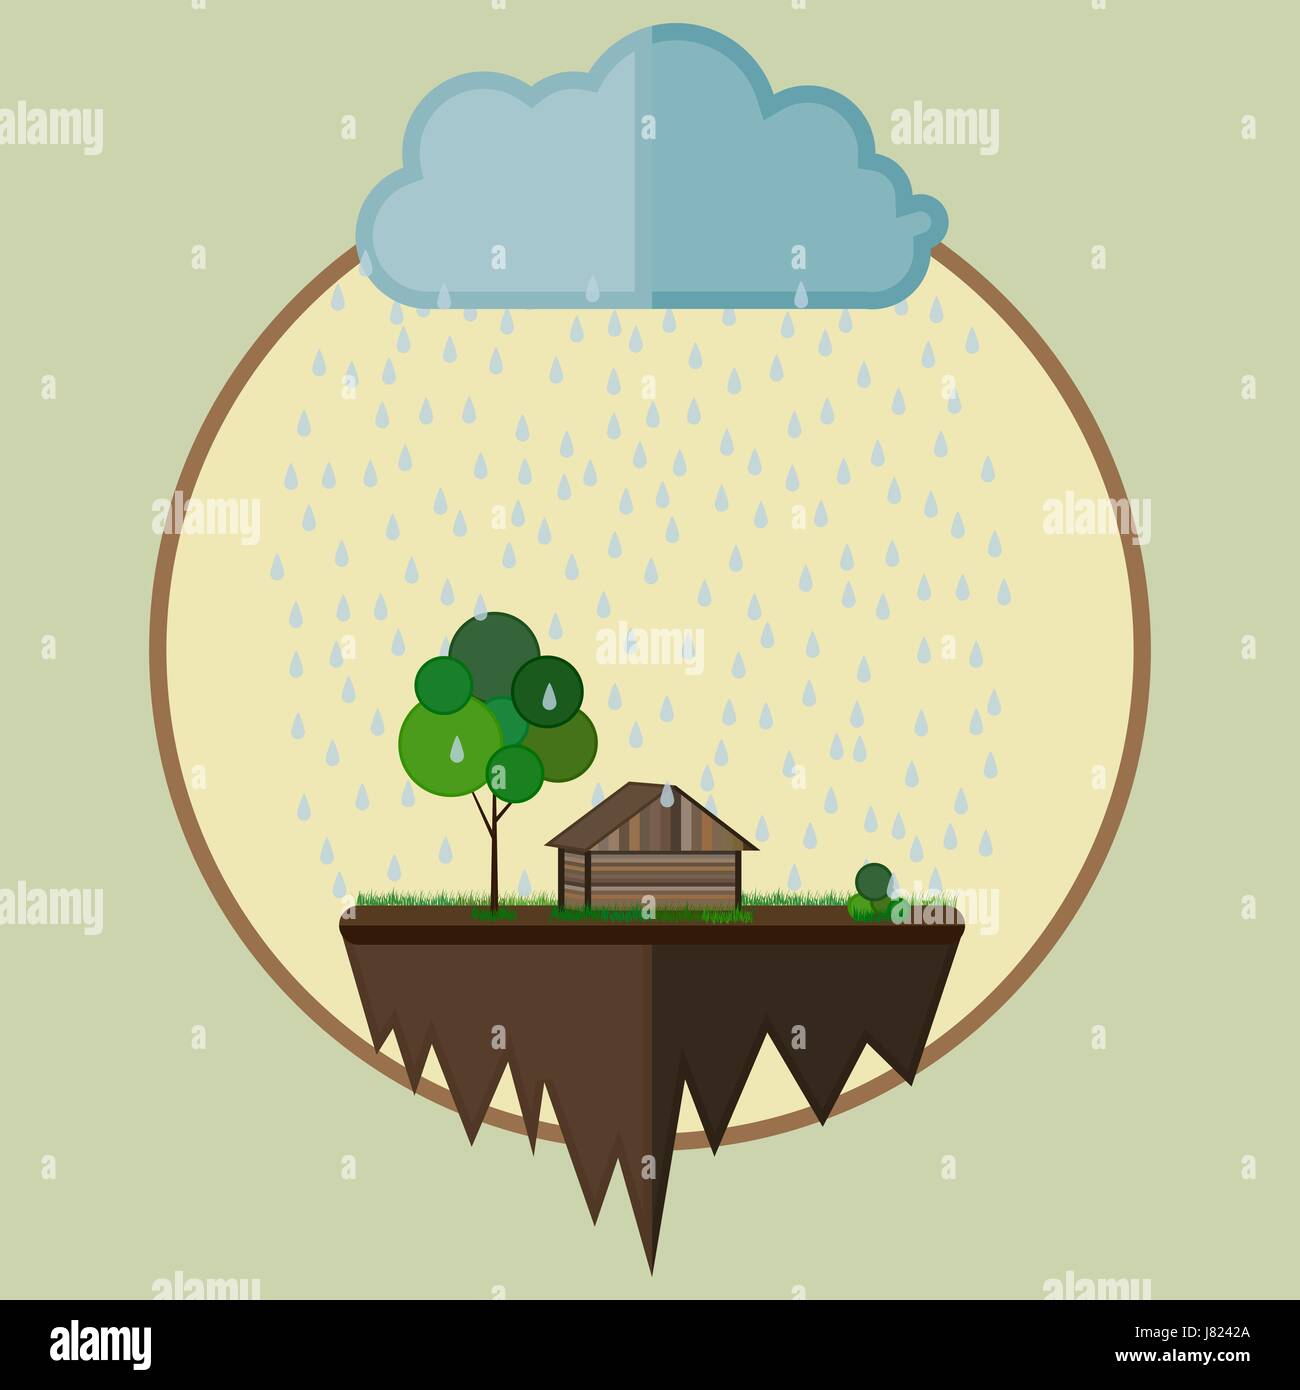 Fliegende Insel mit einem Haus und Baum als Bauernhof Oase unter einer Wolke mit fallenden Regen fällt. Vektor-Illustration, ökologische Konzept. Stock Vektor